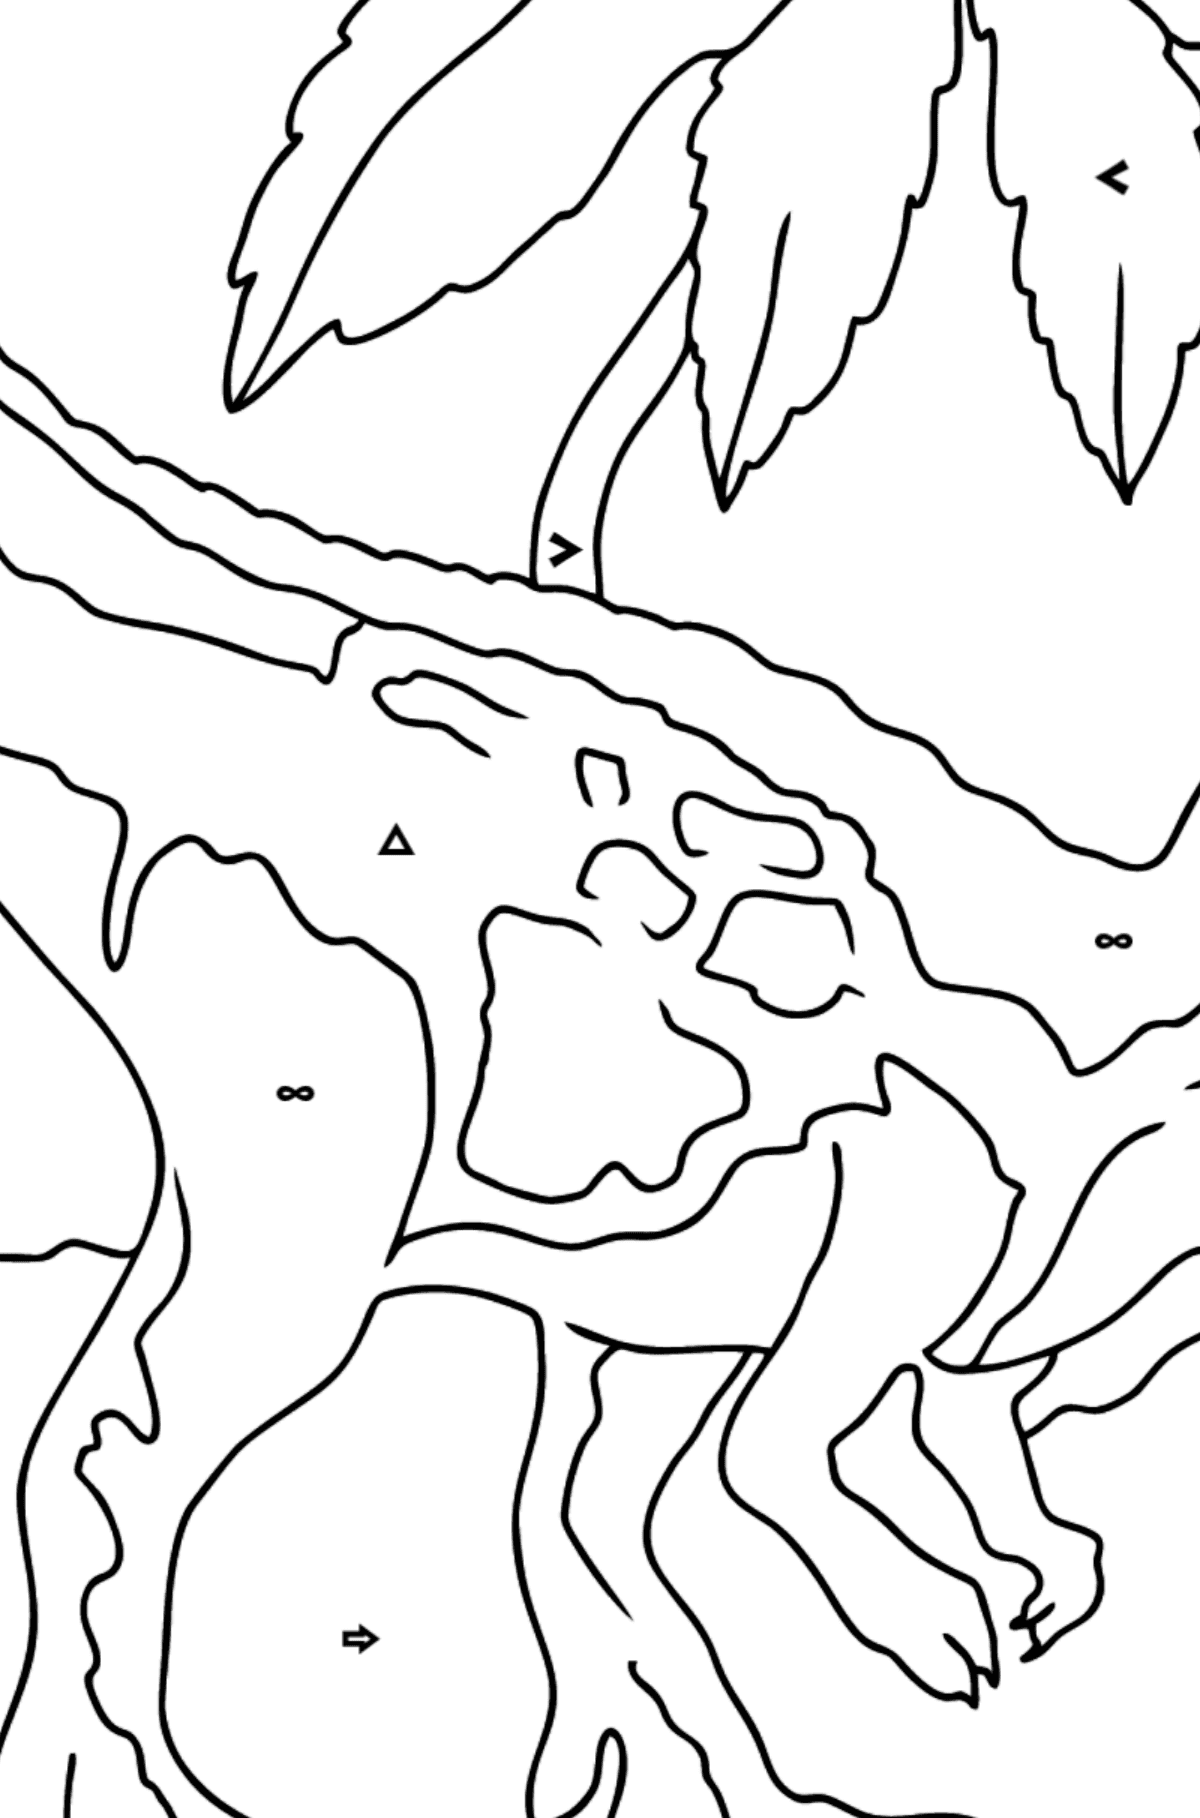 Målarbild tyrannosaurus rovdjur (lätt) - Färgläggning efter symboler och av geometriska figurer För barn